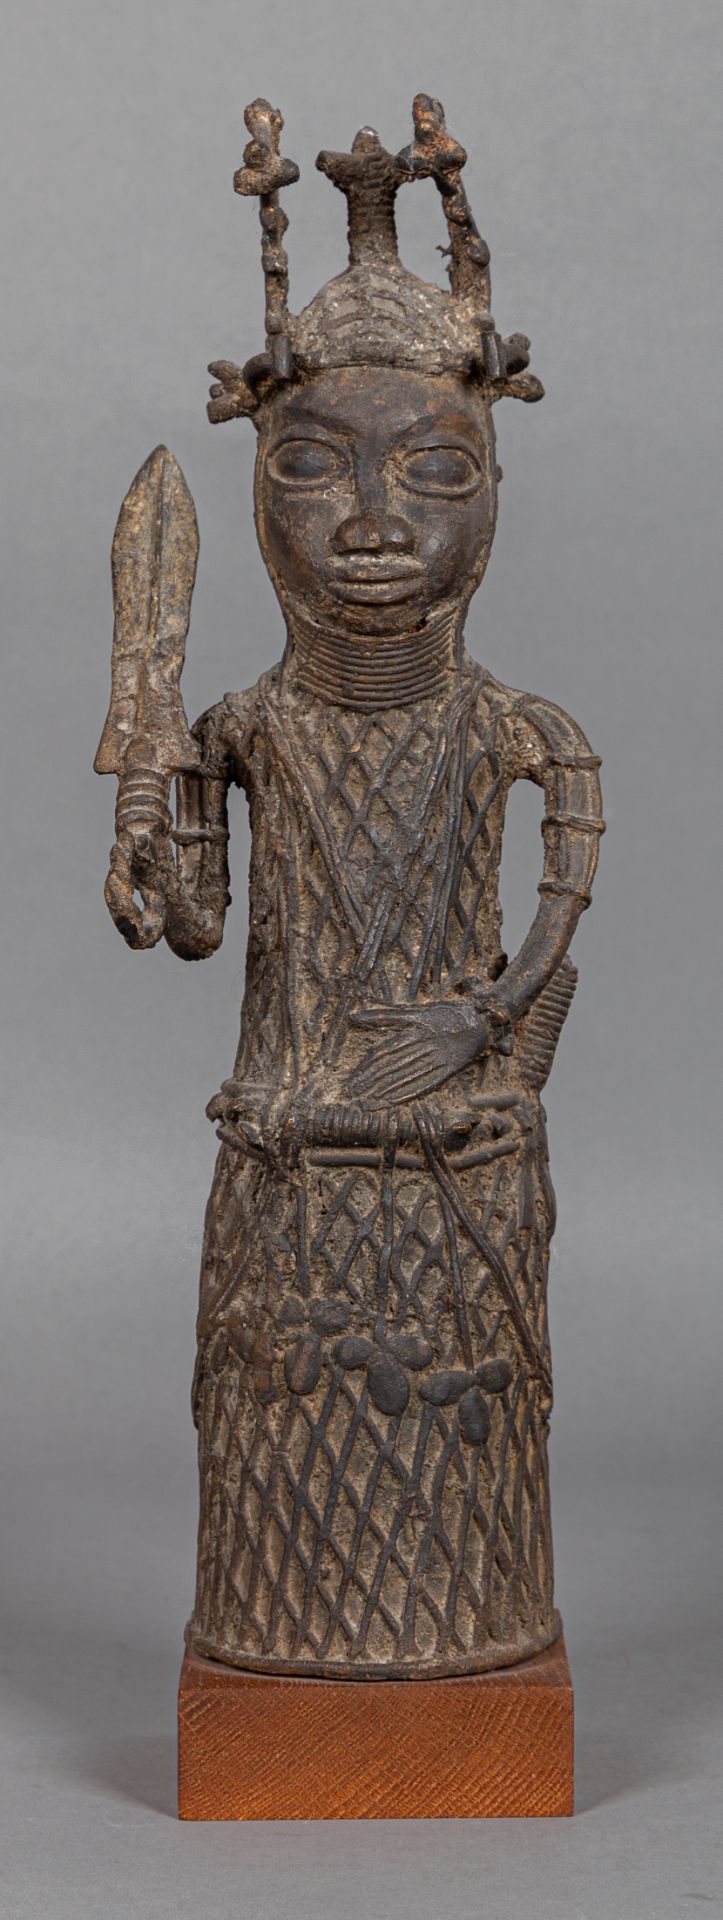 Stehender Bewaffneter als Wächterfigur, Nigeria (Benin), Mitte 20. Jh.